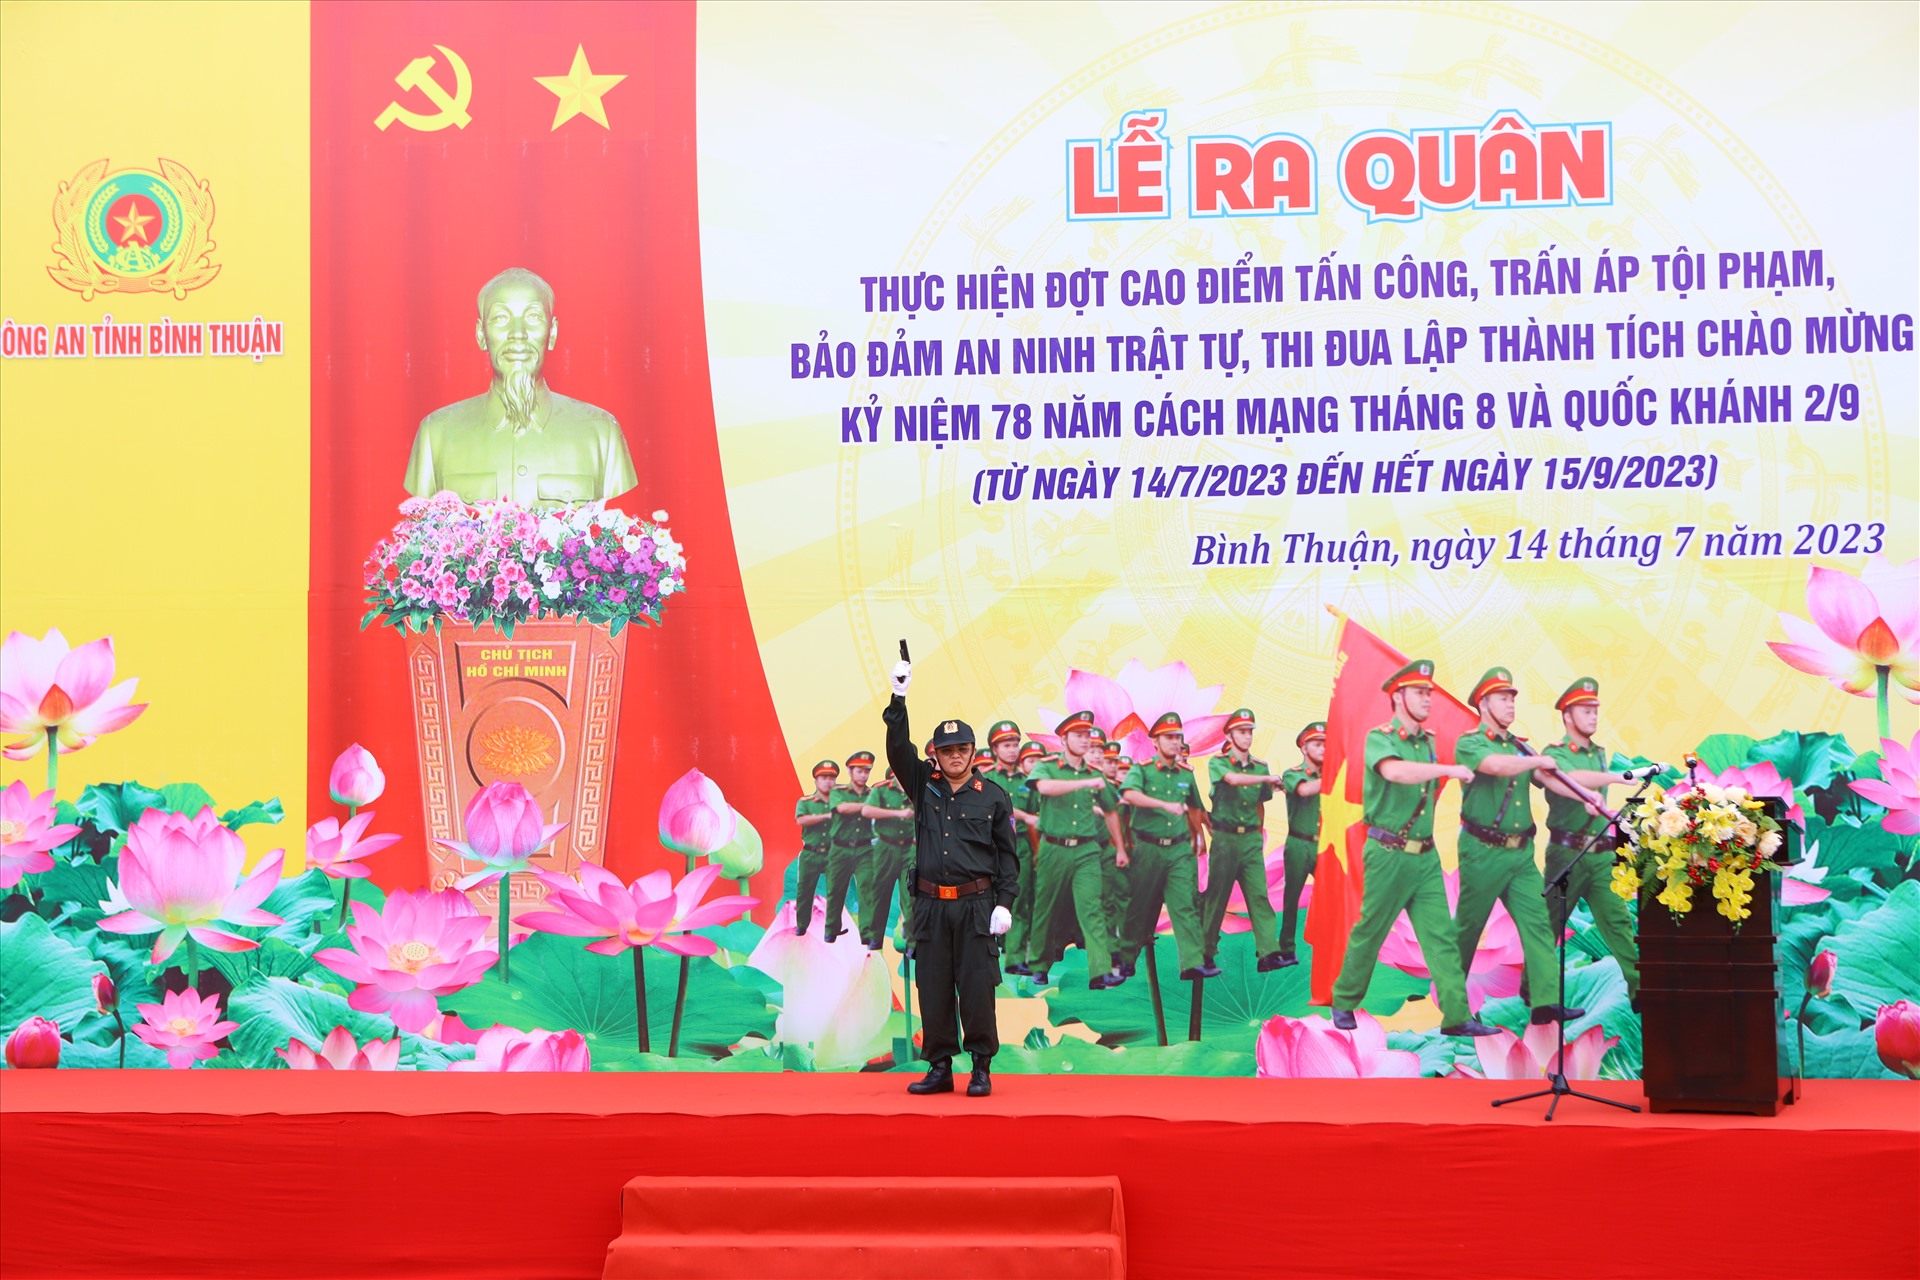 Đại tá Huỳnh Ngọc Liêm, Phó giám đốc công an tỉnh Bình Thuận phát lệnh ra quân. Ảnh: Duy Tuấn